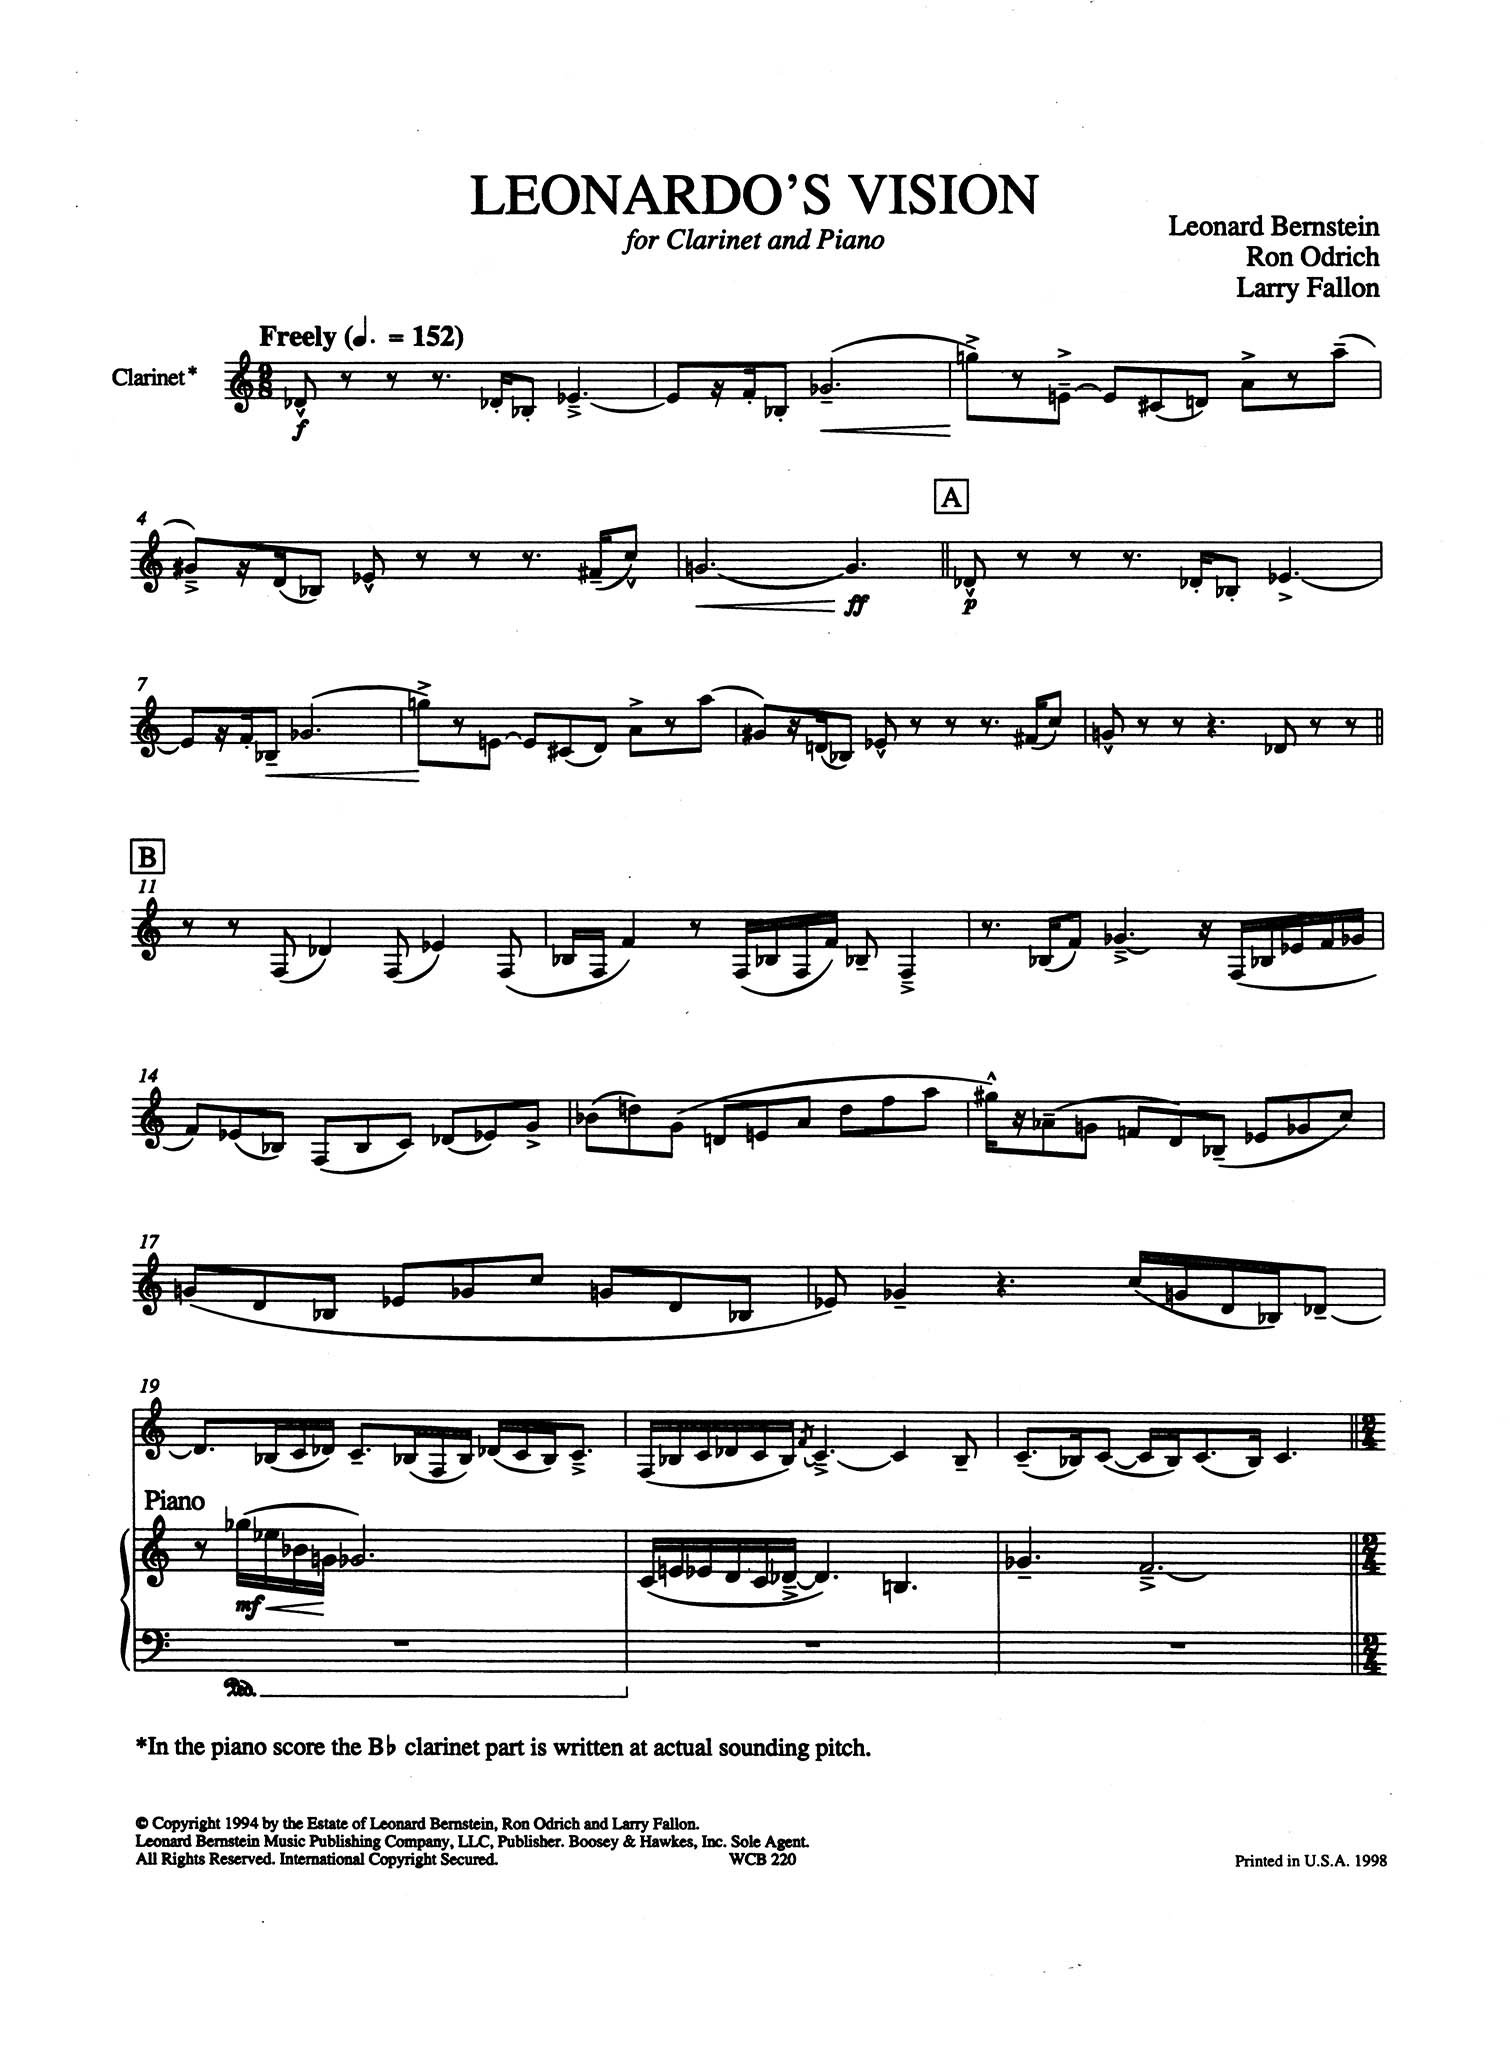 Leonardo’s Vision Bernstein Odrich Fallon for clarinet and piano score